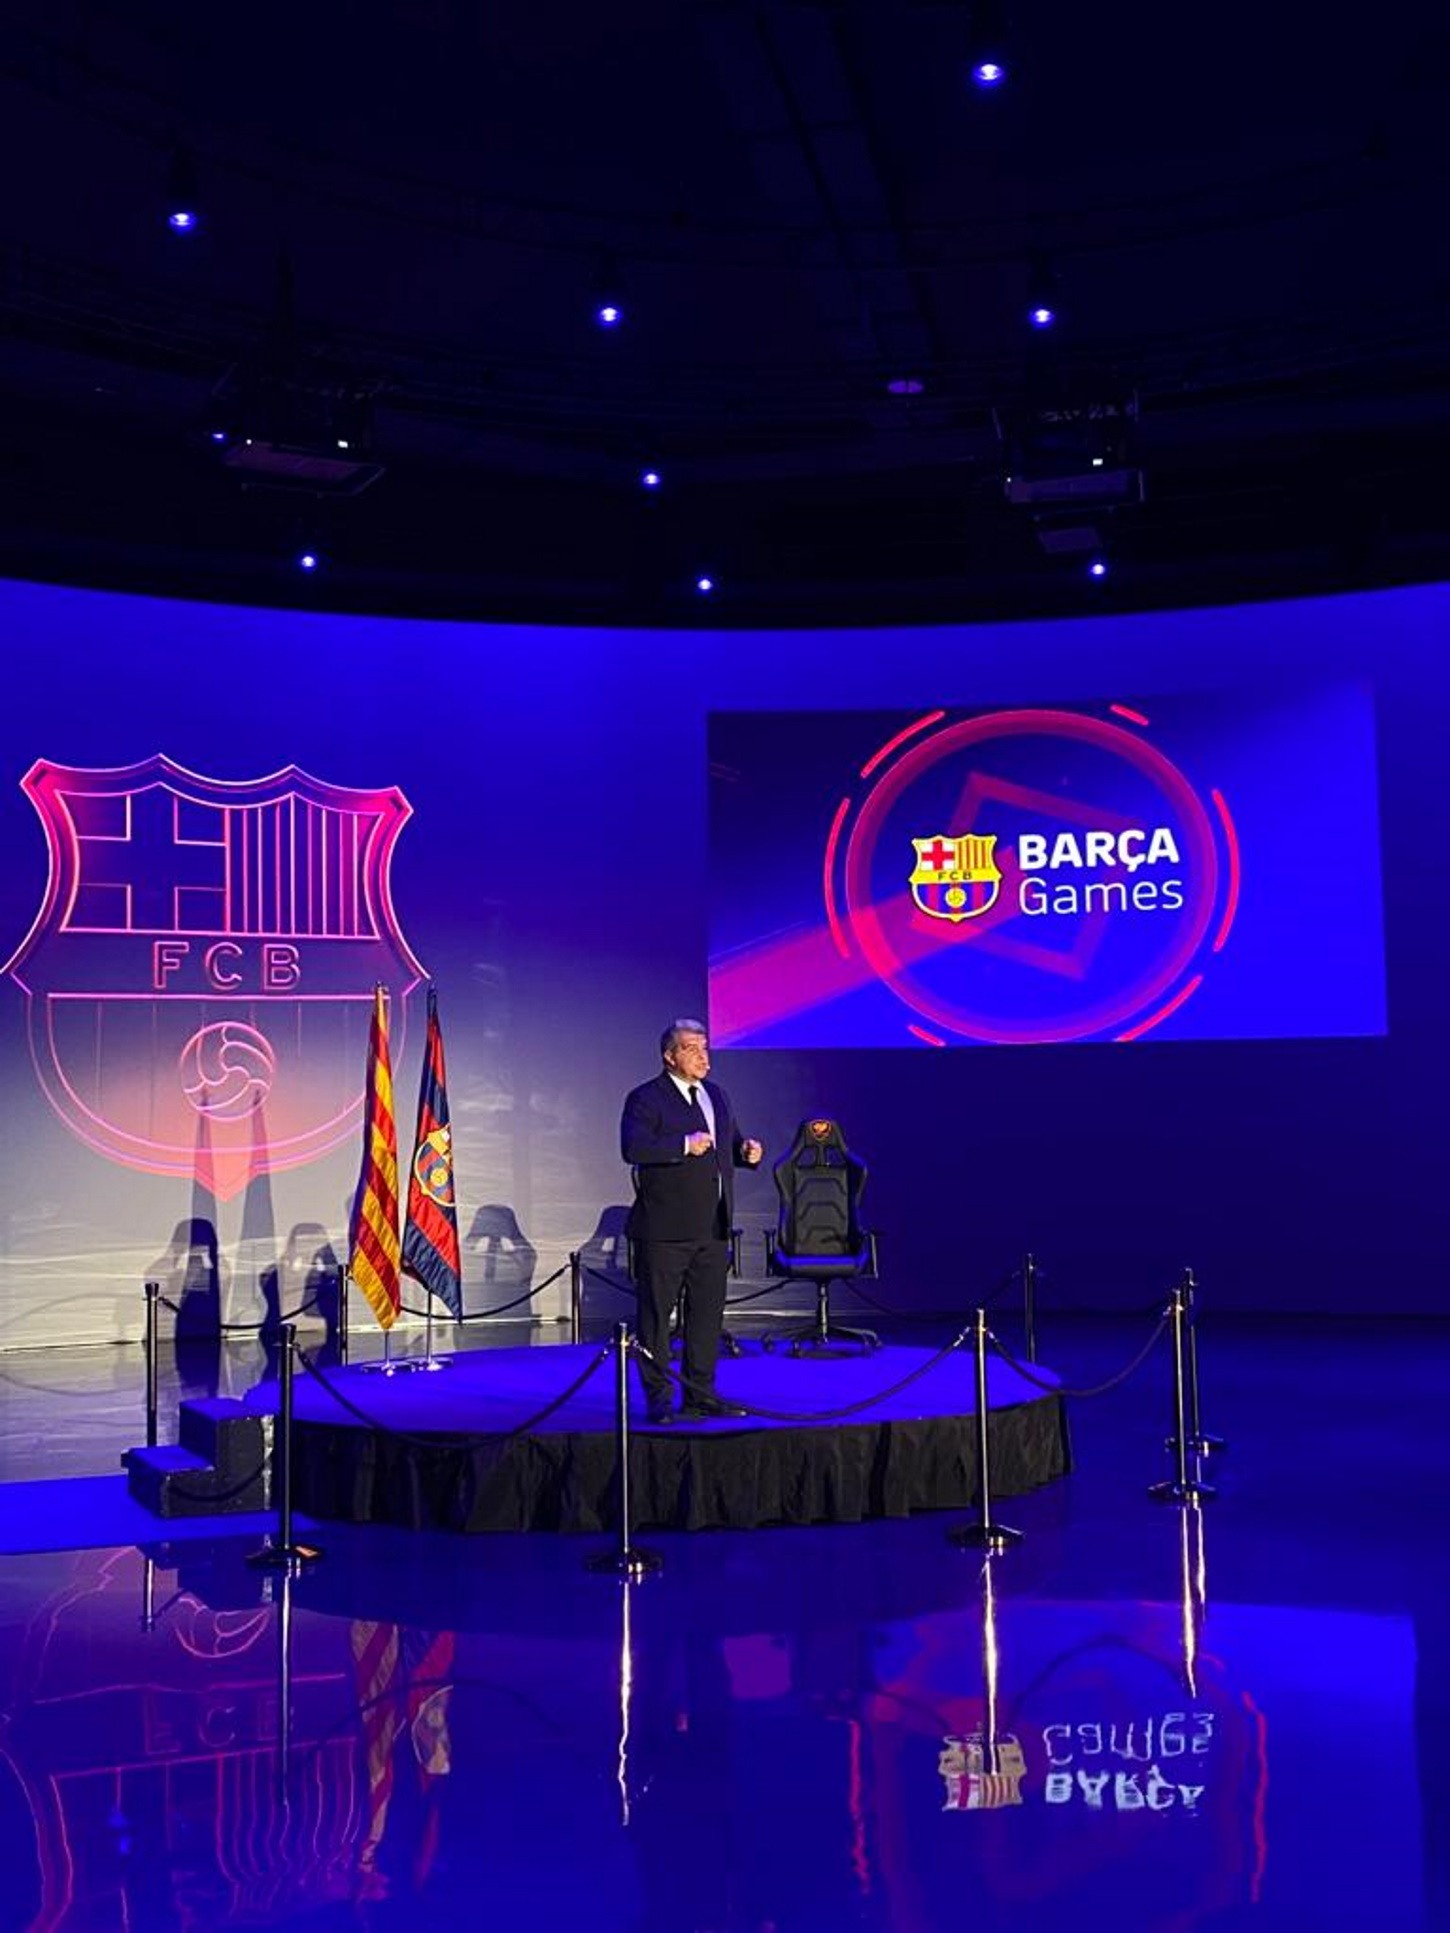 El FC Barcelona presenta Barça Games, una plataforma de videojocs amb Masia Virtual inclosa